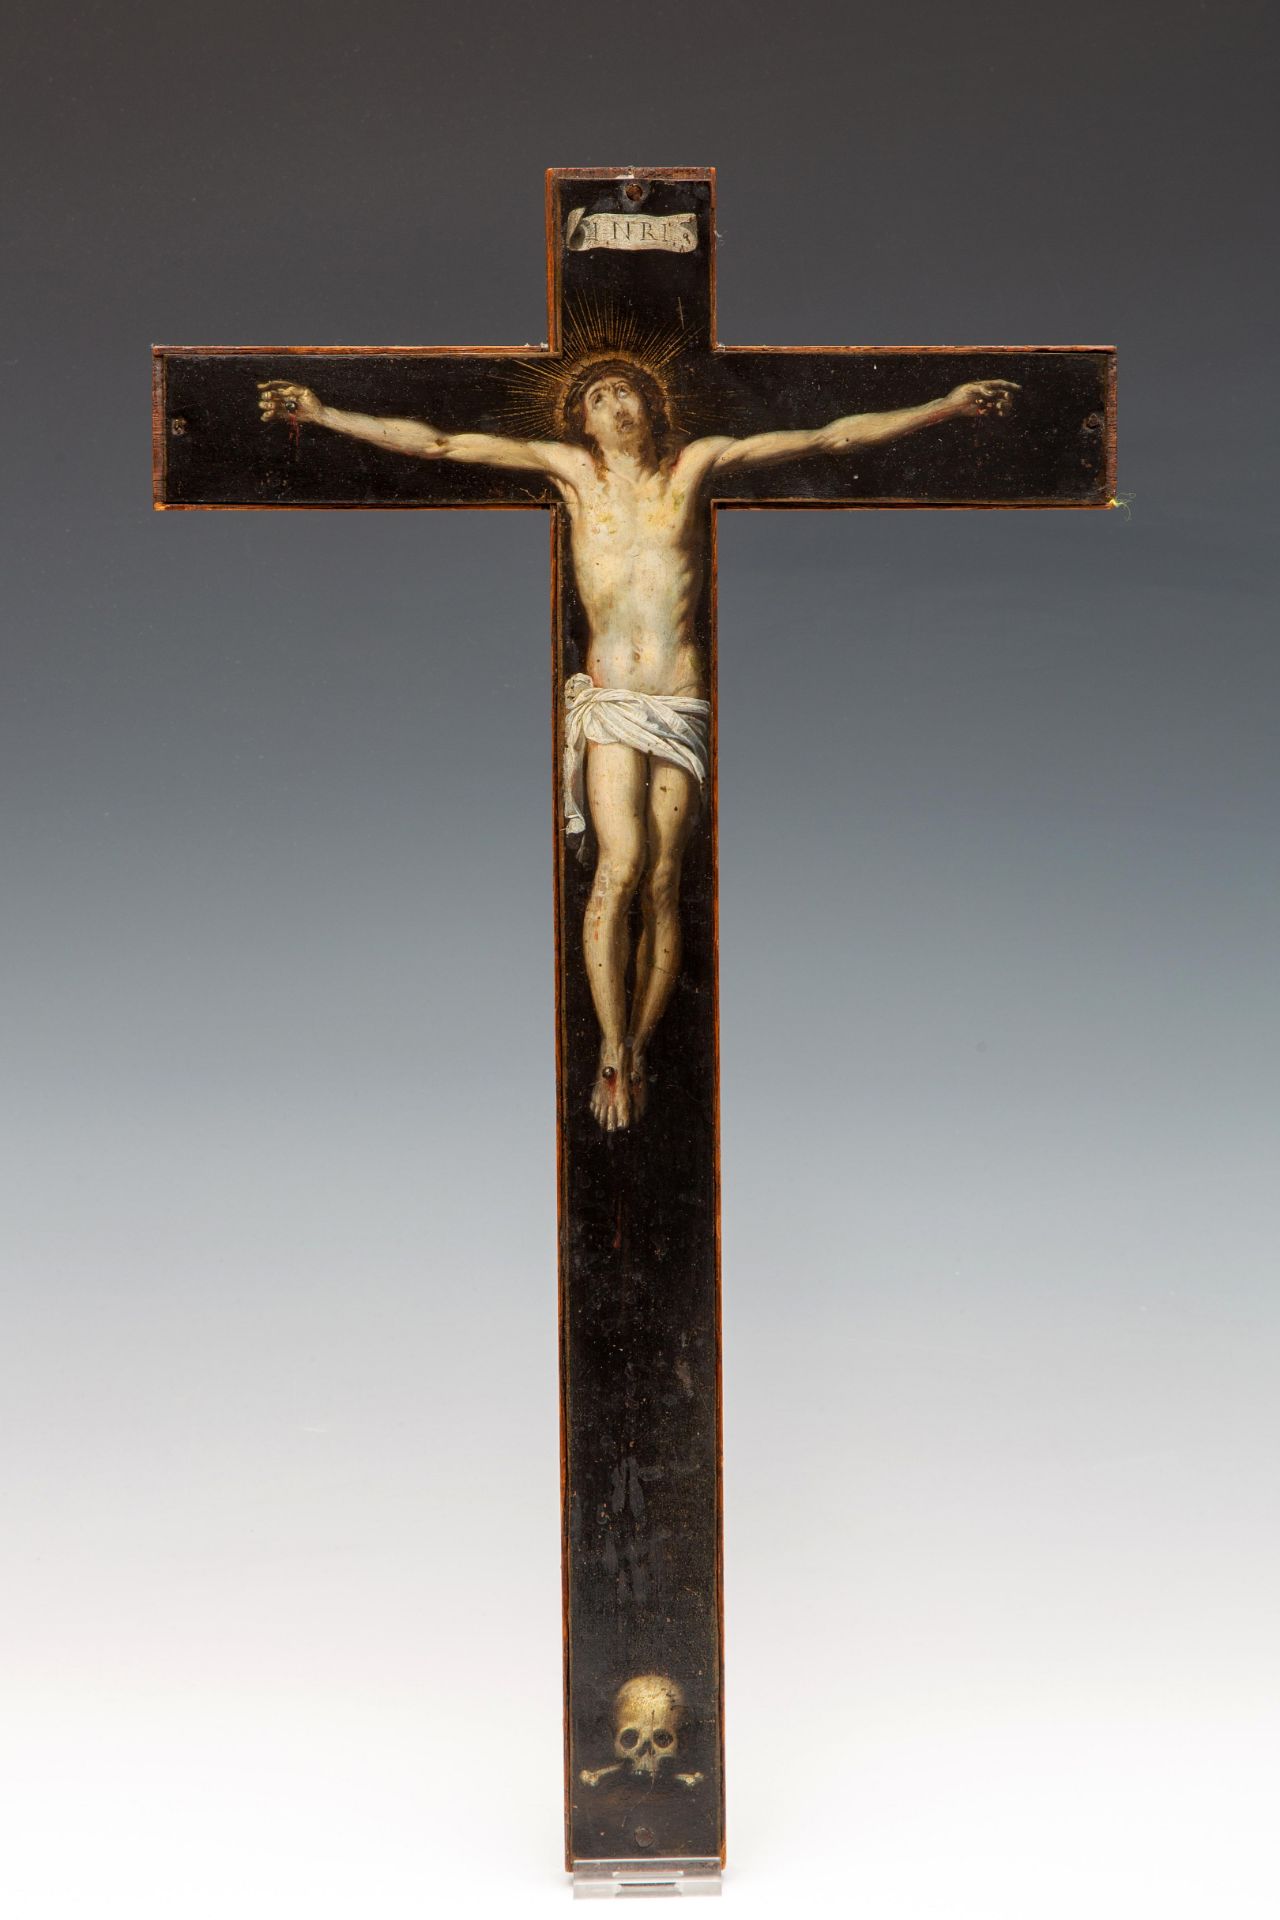 Vlaamse School, op koper geschilderde crucifix, 17e eeuw. - Bild 2 aus 3